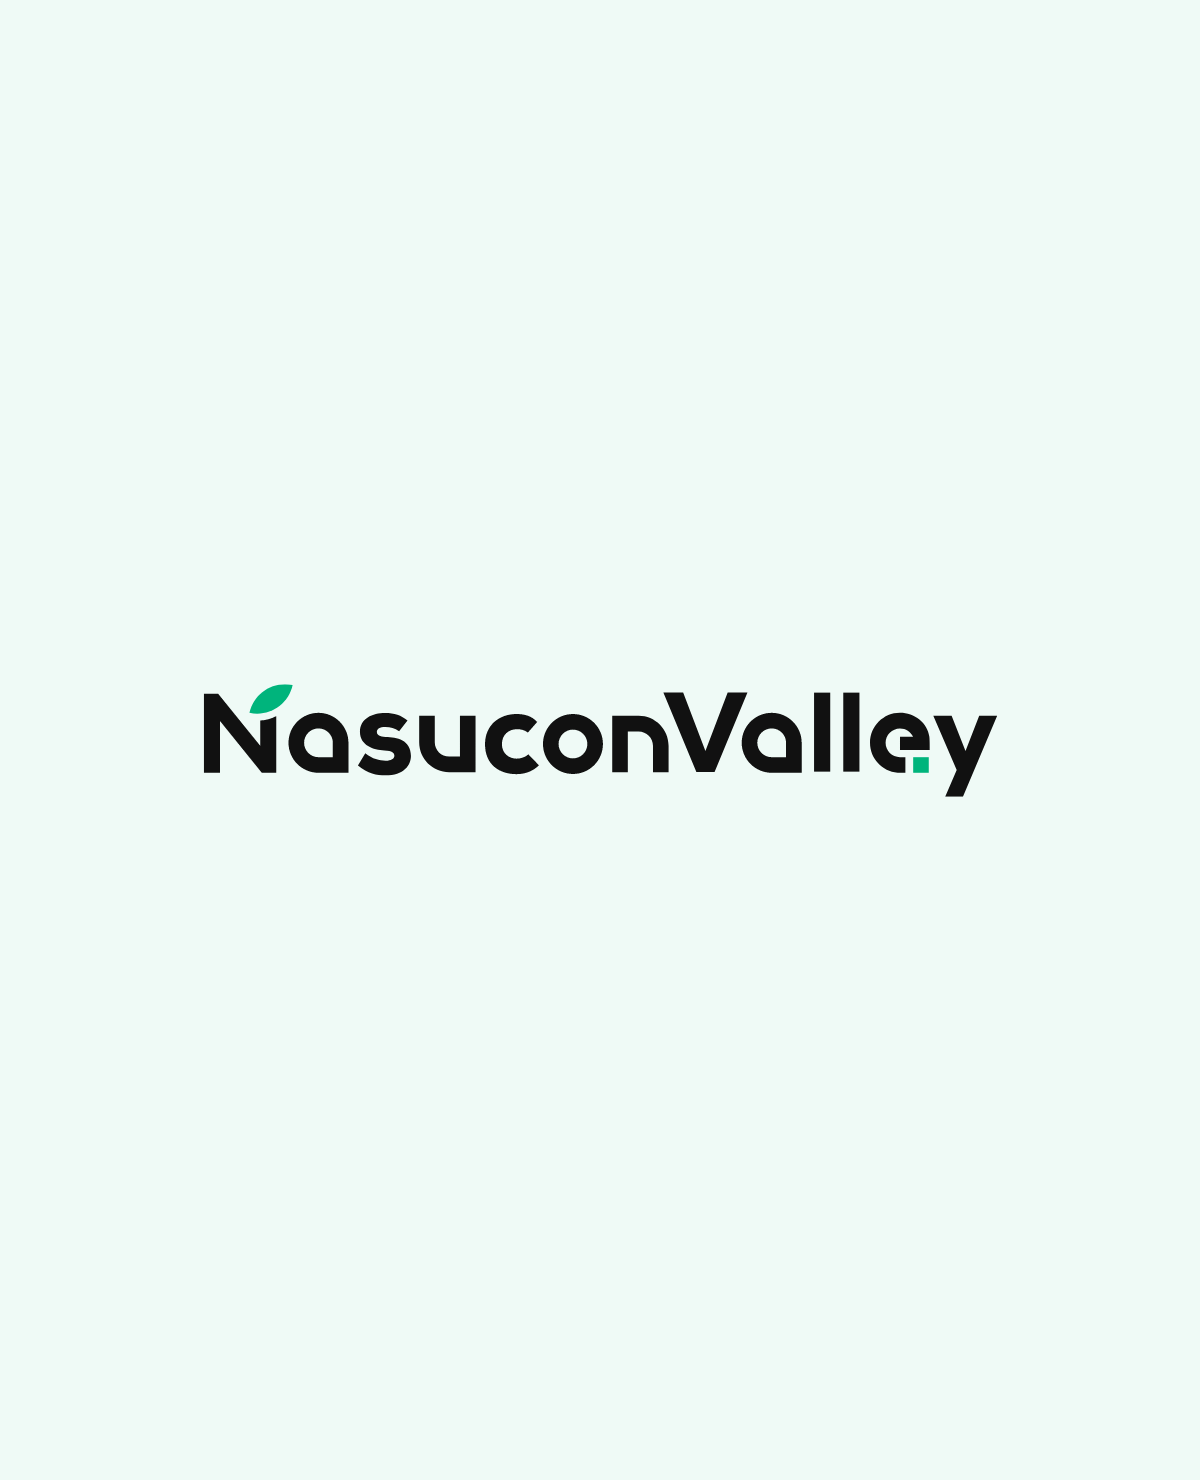 NasuconValley